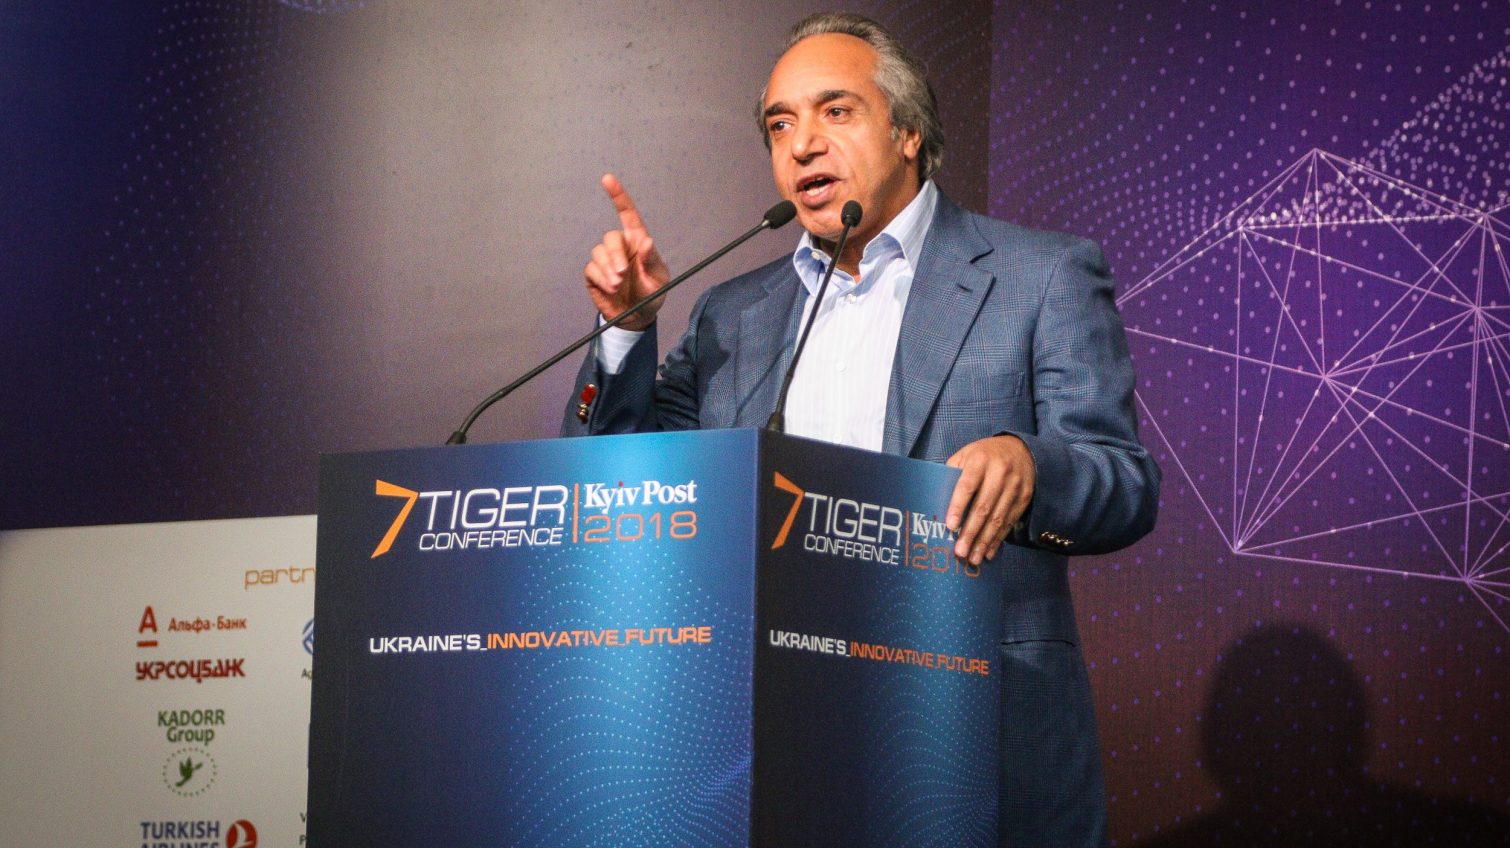 Свобода является ключевым рычагом развития бизнеса, медиа и реформ,- Аднан Киван открыл международную конференцию “Tiger” в Киеве «фото»